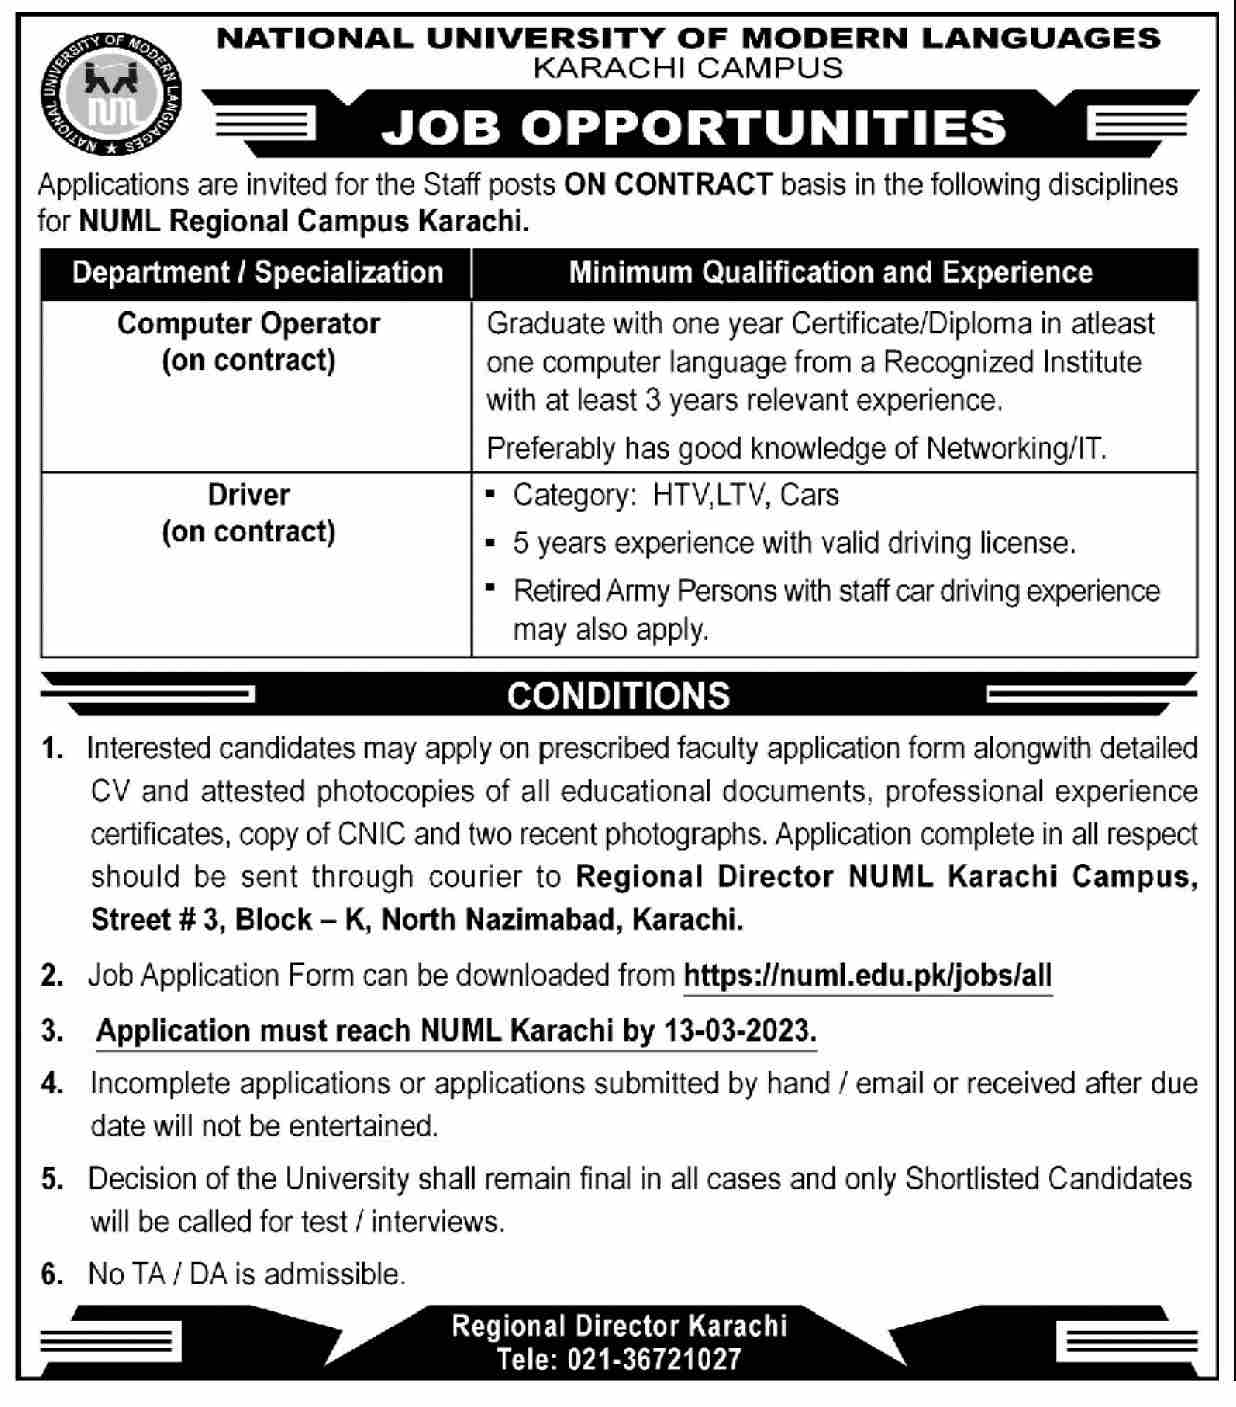 Career Opportunities in NUML Karachi